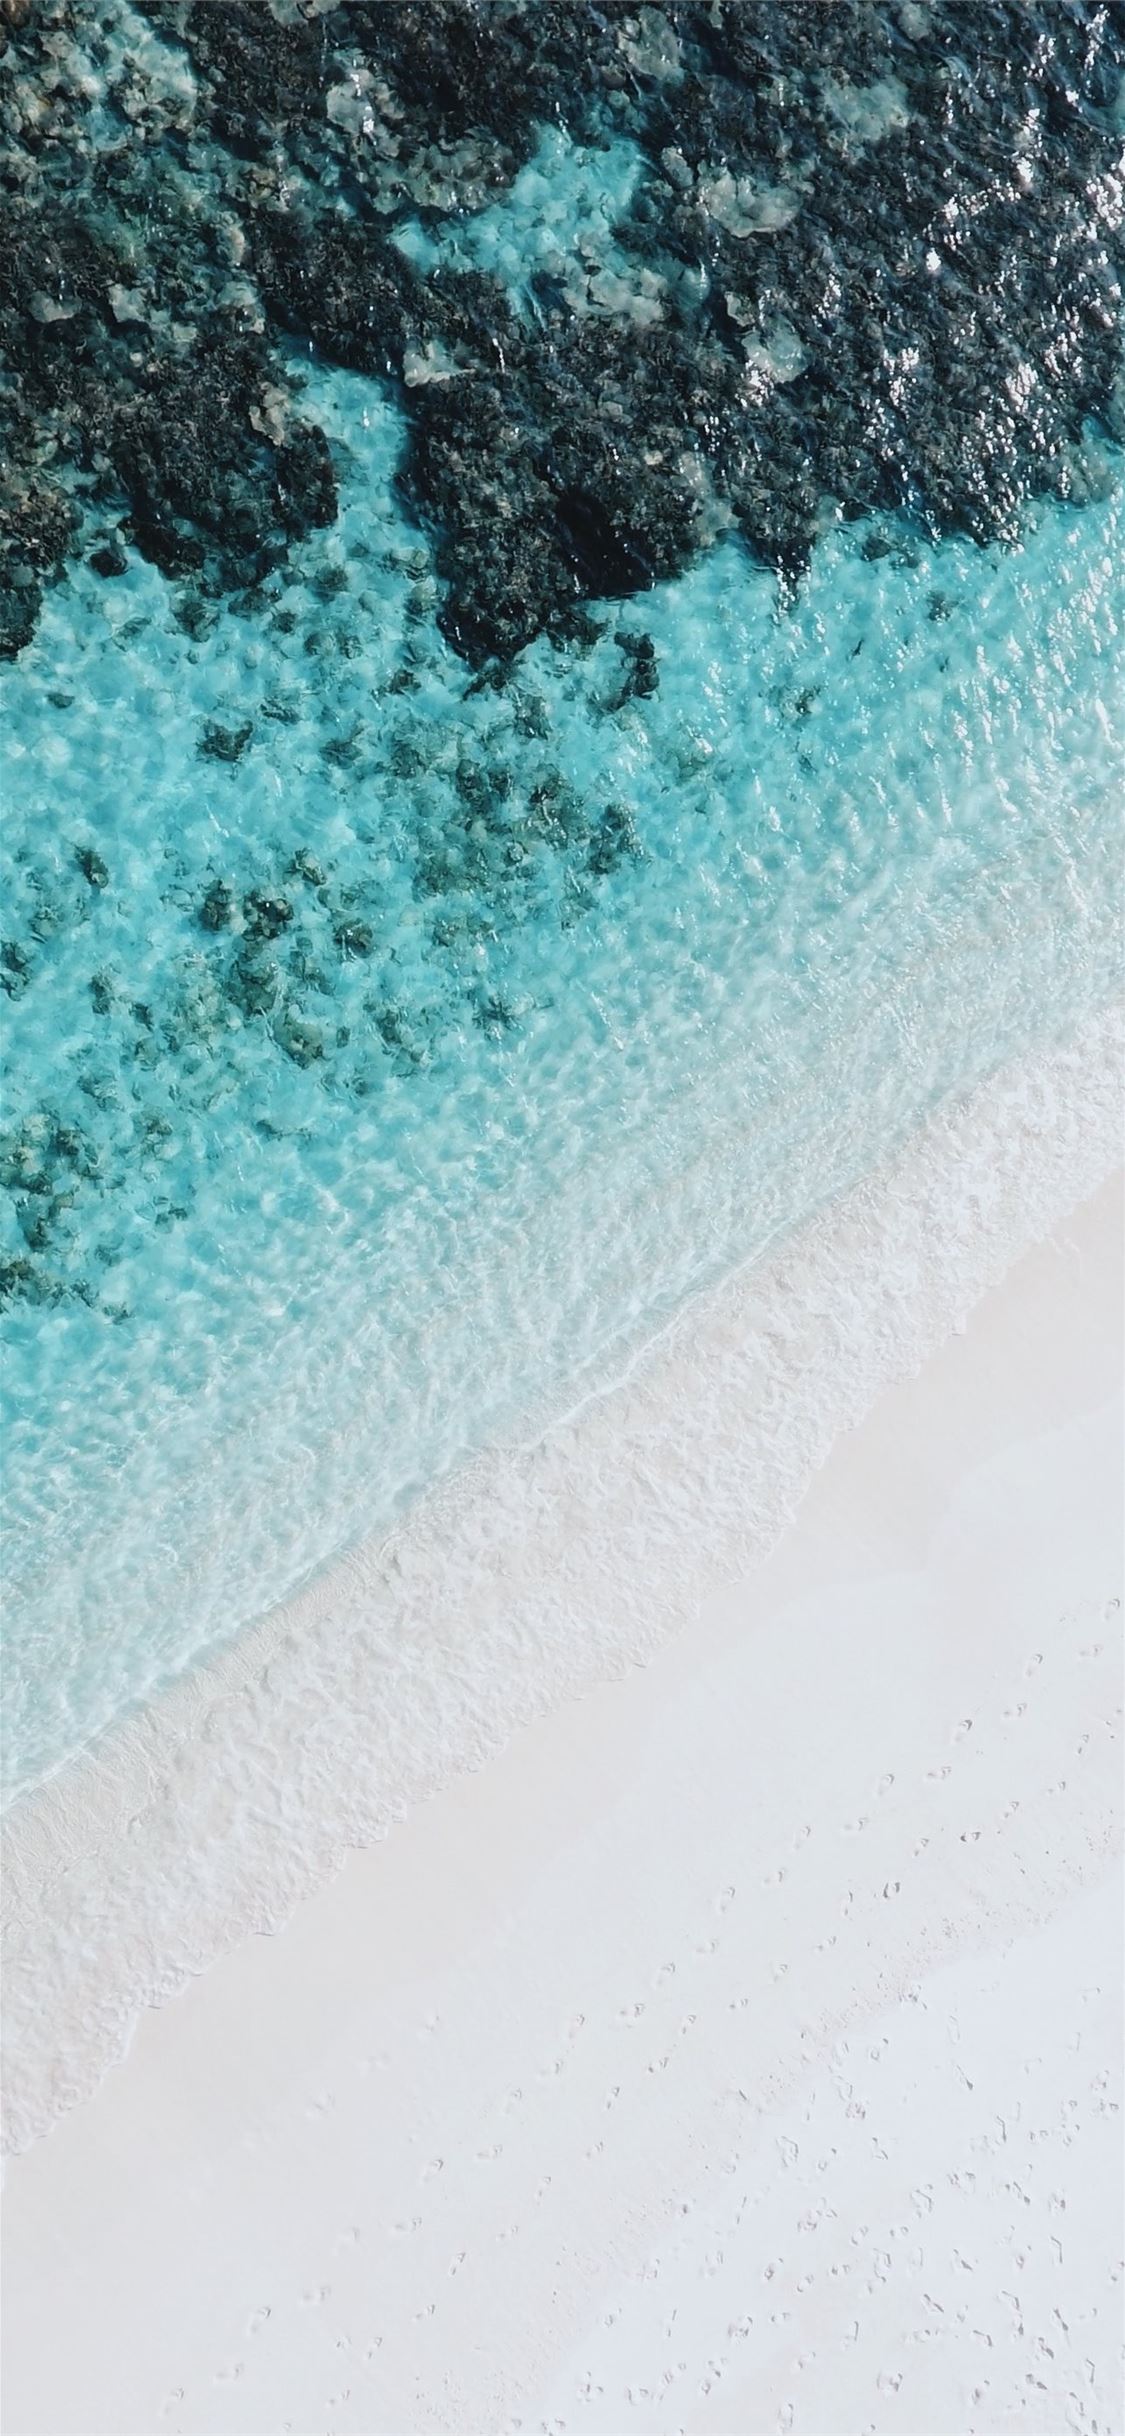 Khám phá lãng mạn và đầy cảm hứng với hình nền iPhone bãi biển từ góc cao. Cảm nhận một cảm giác chiêm ngưỡng toàn cảnh biển cả với những hàng dương xanh rực rỡ chạy dọc theo bãi tắm. Chắc chắn bạn sẽ thích thú với hình nền này.